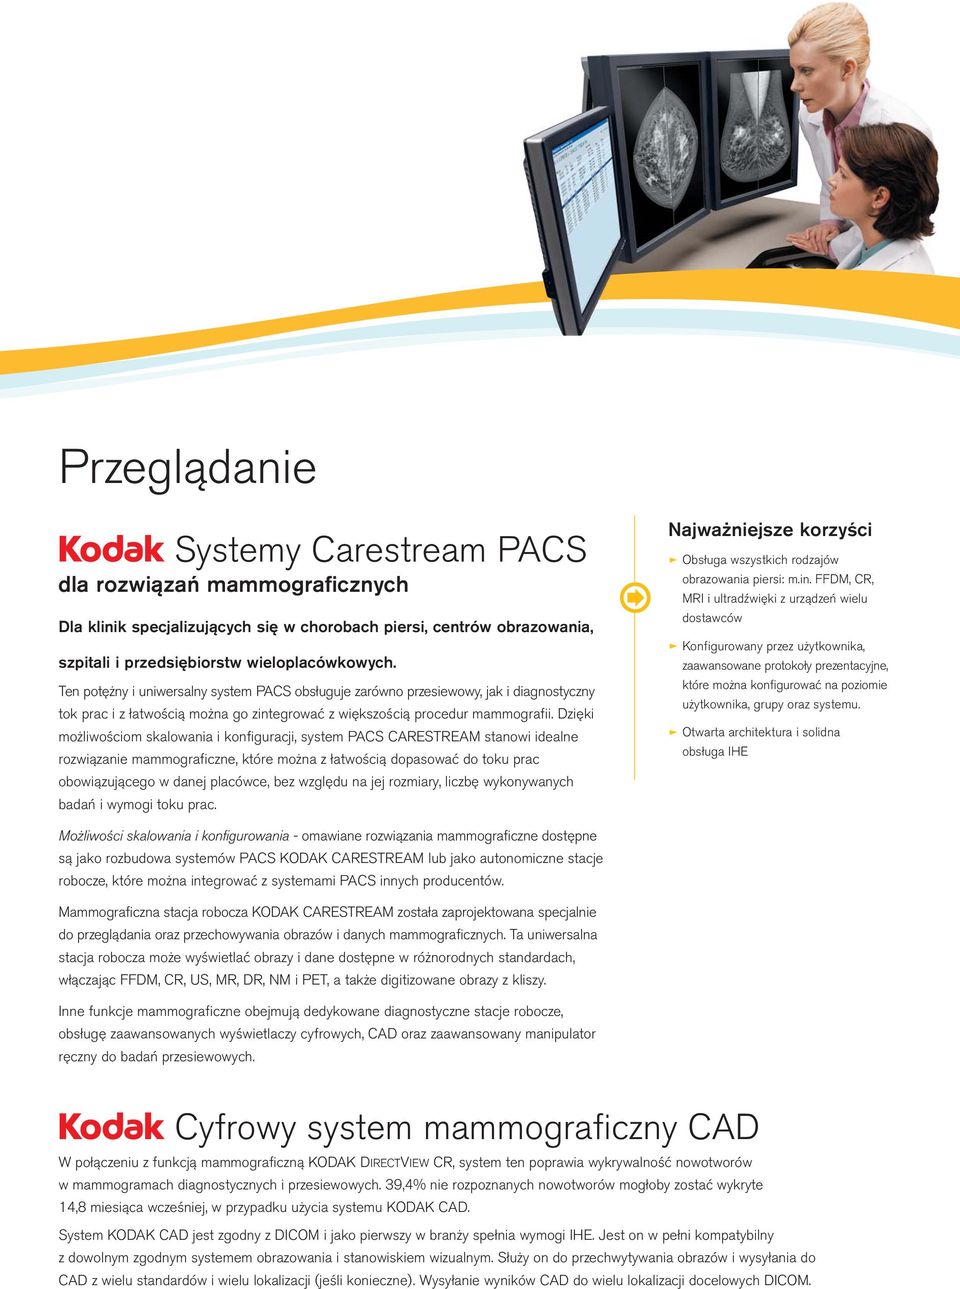 Dzięki możliwościom skalowania i konfiguracji, system PACS CARESTREAM stanowi idealne rozwiązanie mammograficzne, które można z łatwością dopasować do toku prac obowiązującego w danej placówce, bez